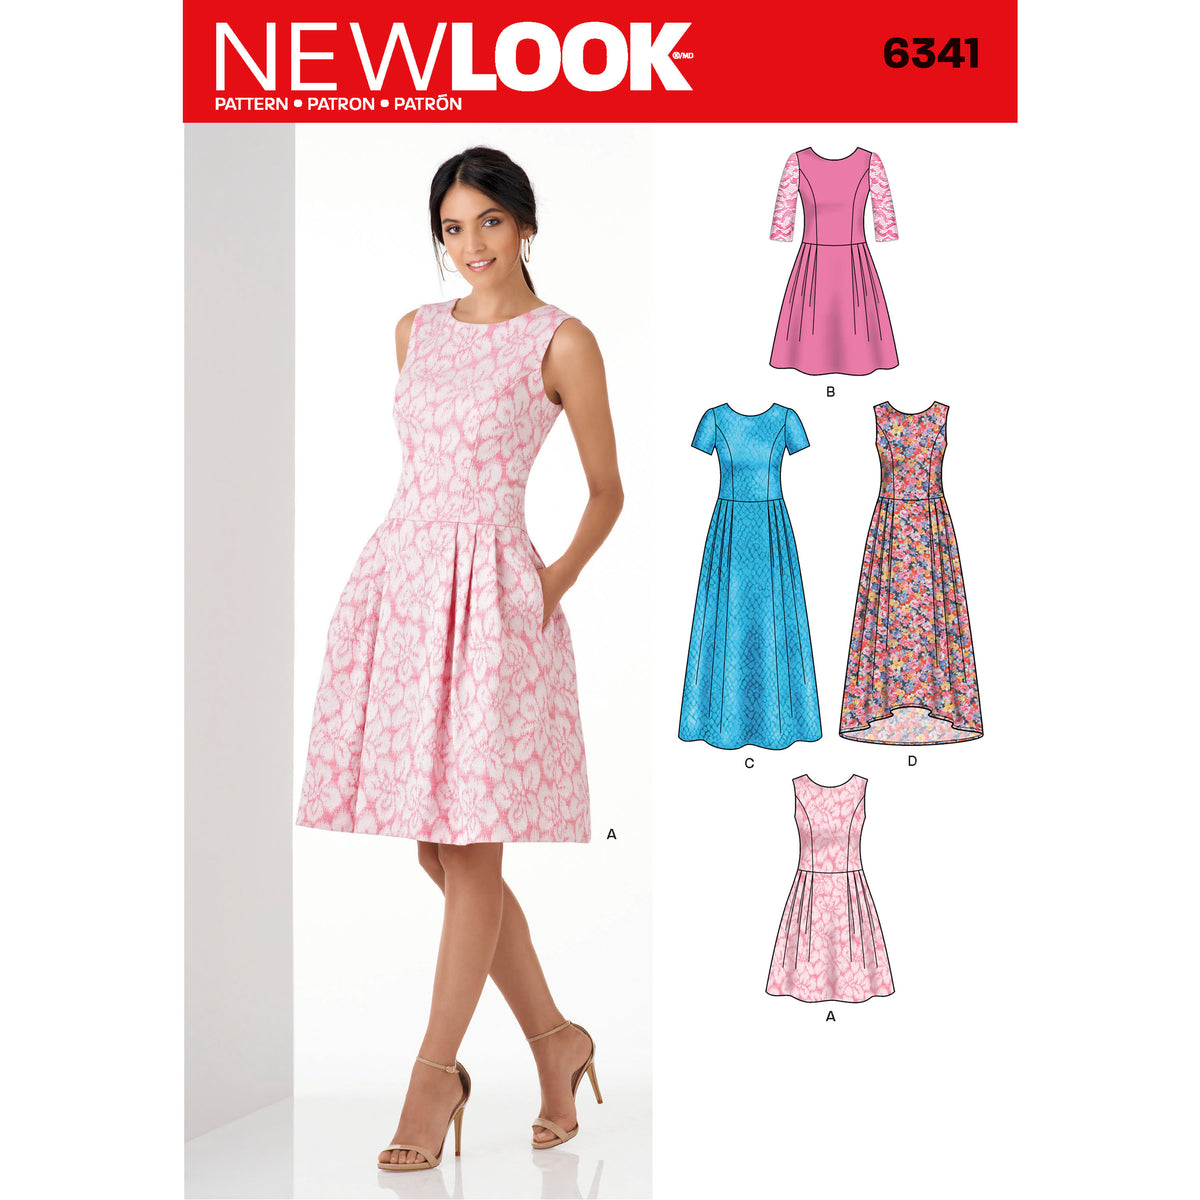 New Look Sewing Pattern 6341 - Pound Fabrics